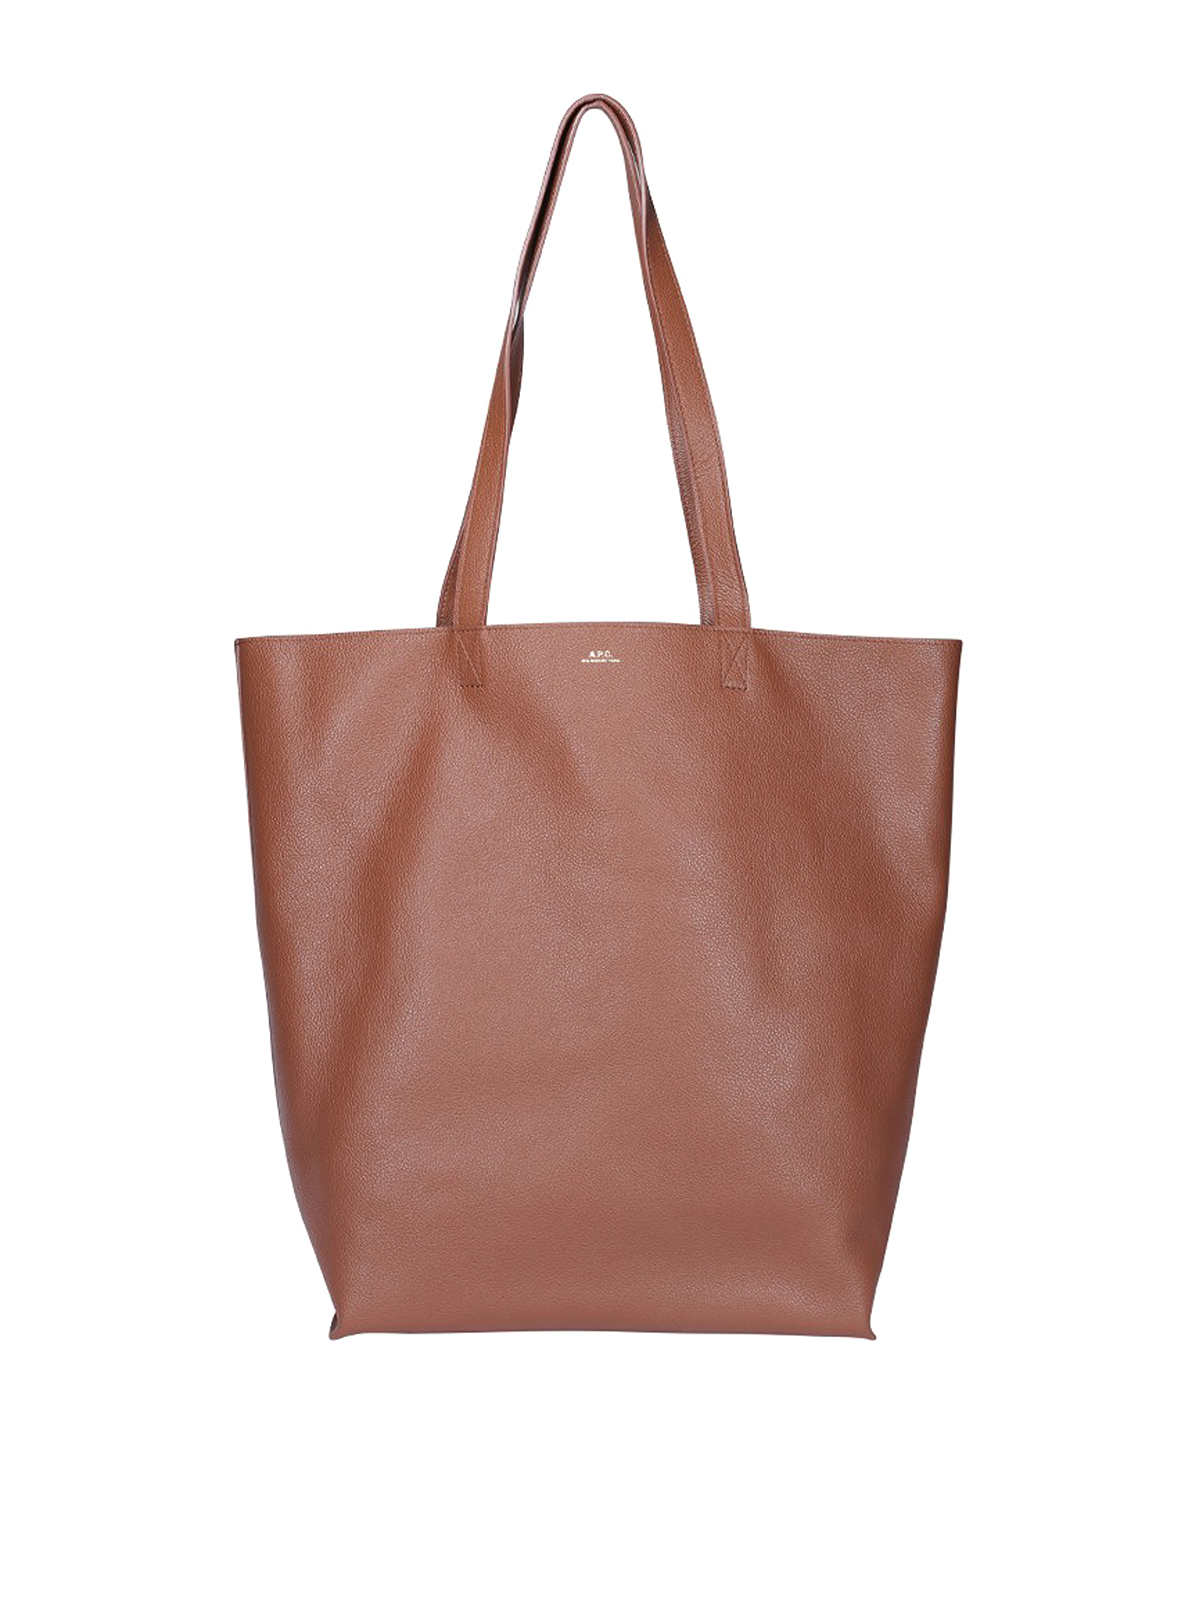 Mayko Bags Designer Tote Bag